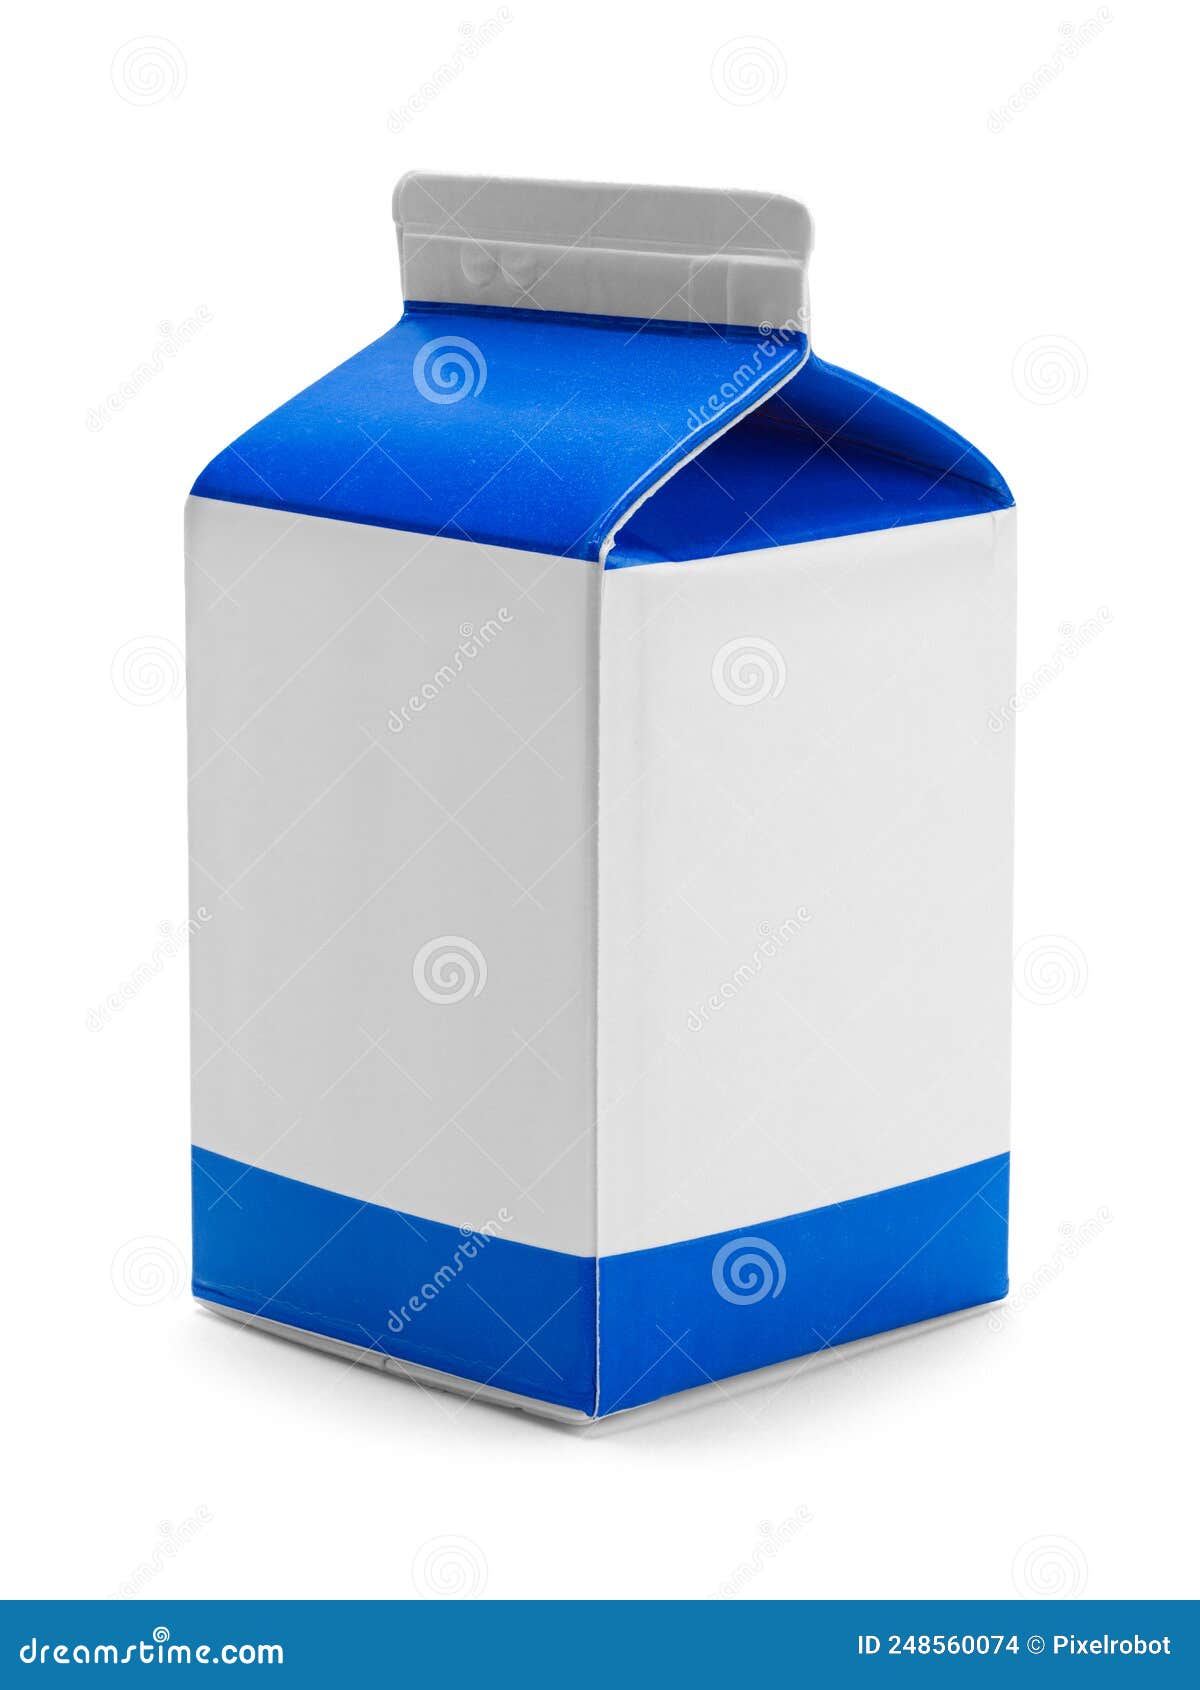 small milk carton